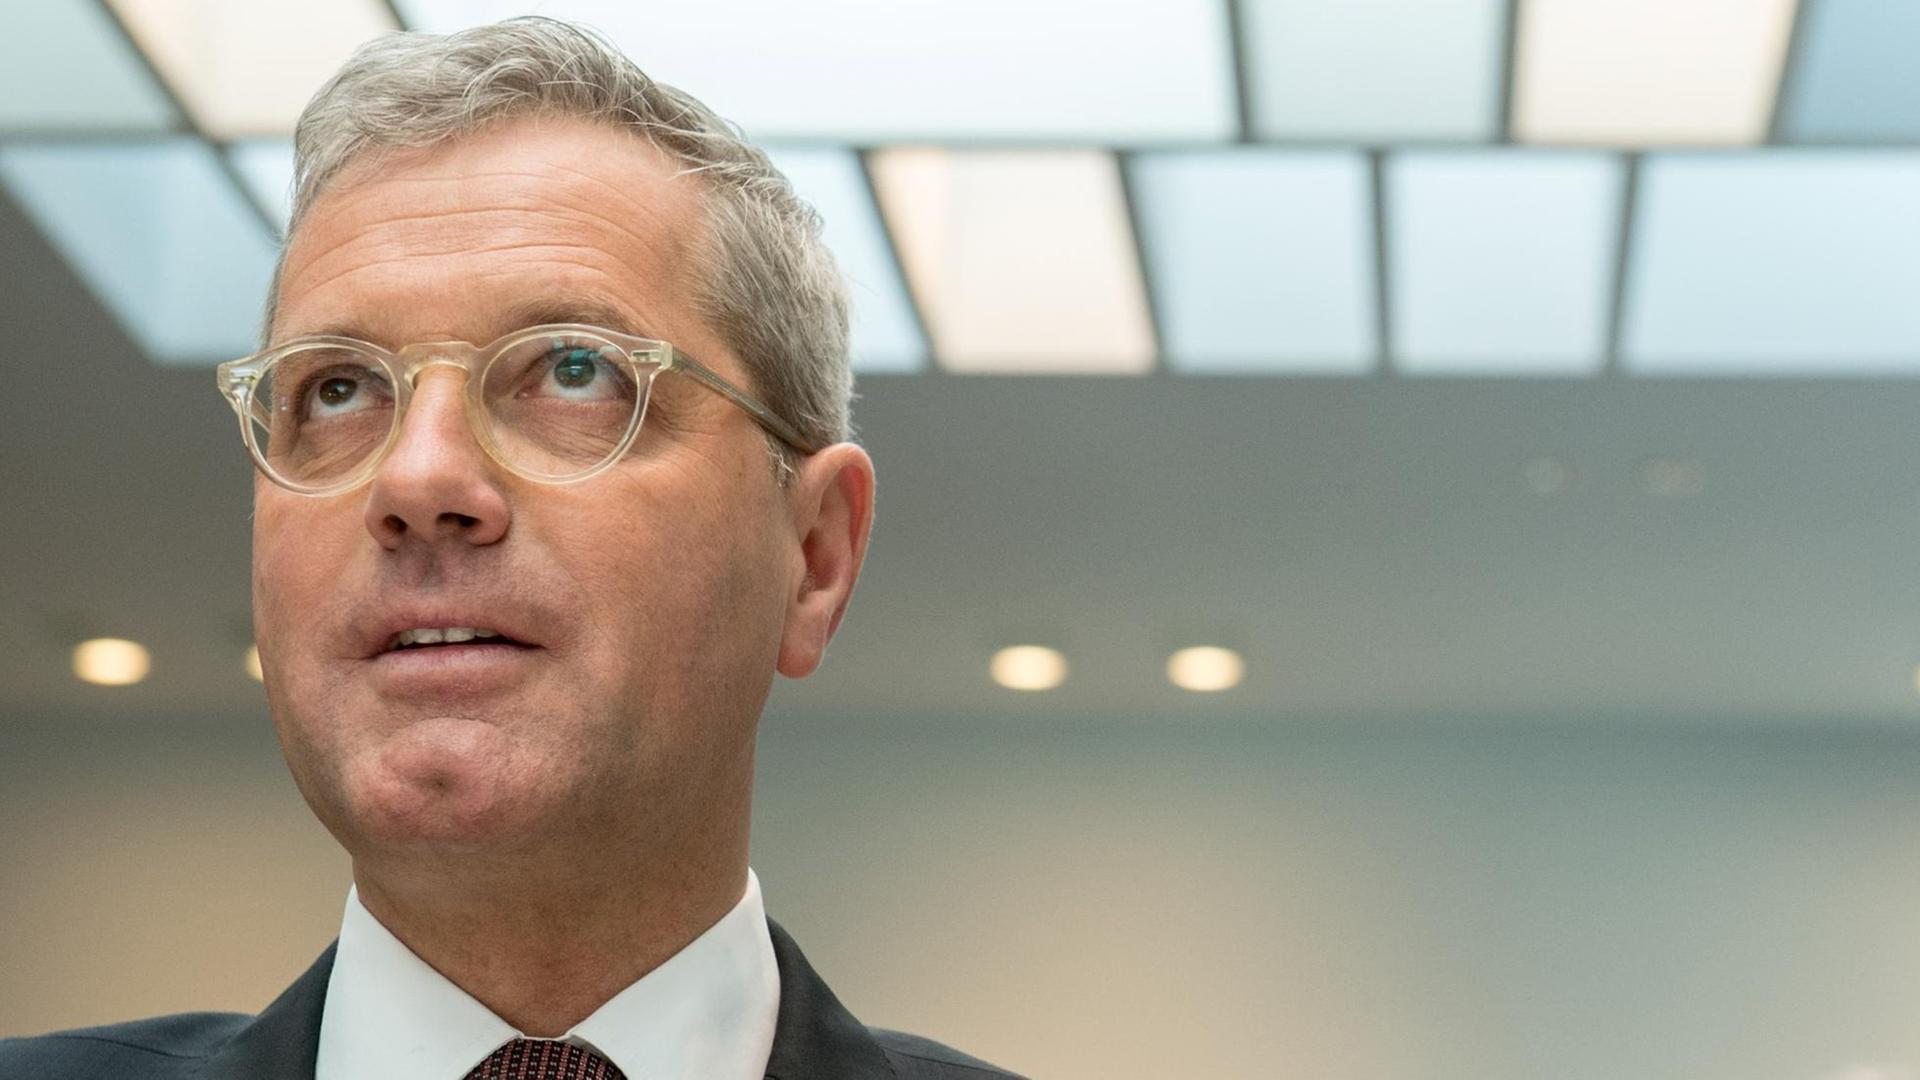 Der Vorsitzende des Auswärtigen Ausschusses im Bundestag, Norbert Röttgen (CDU), im März vor einer Befragung im hessischen Landtag